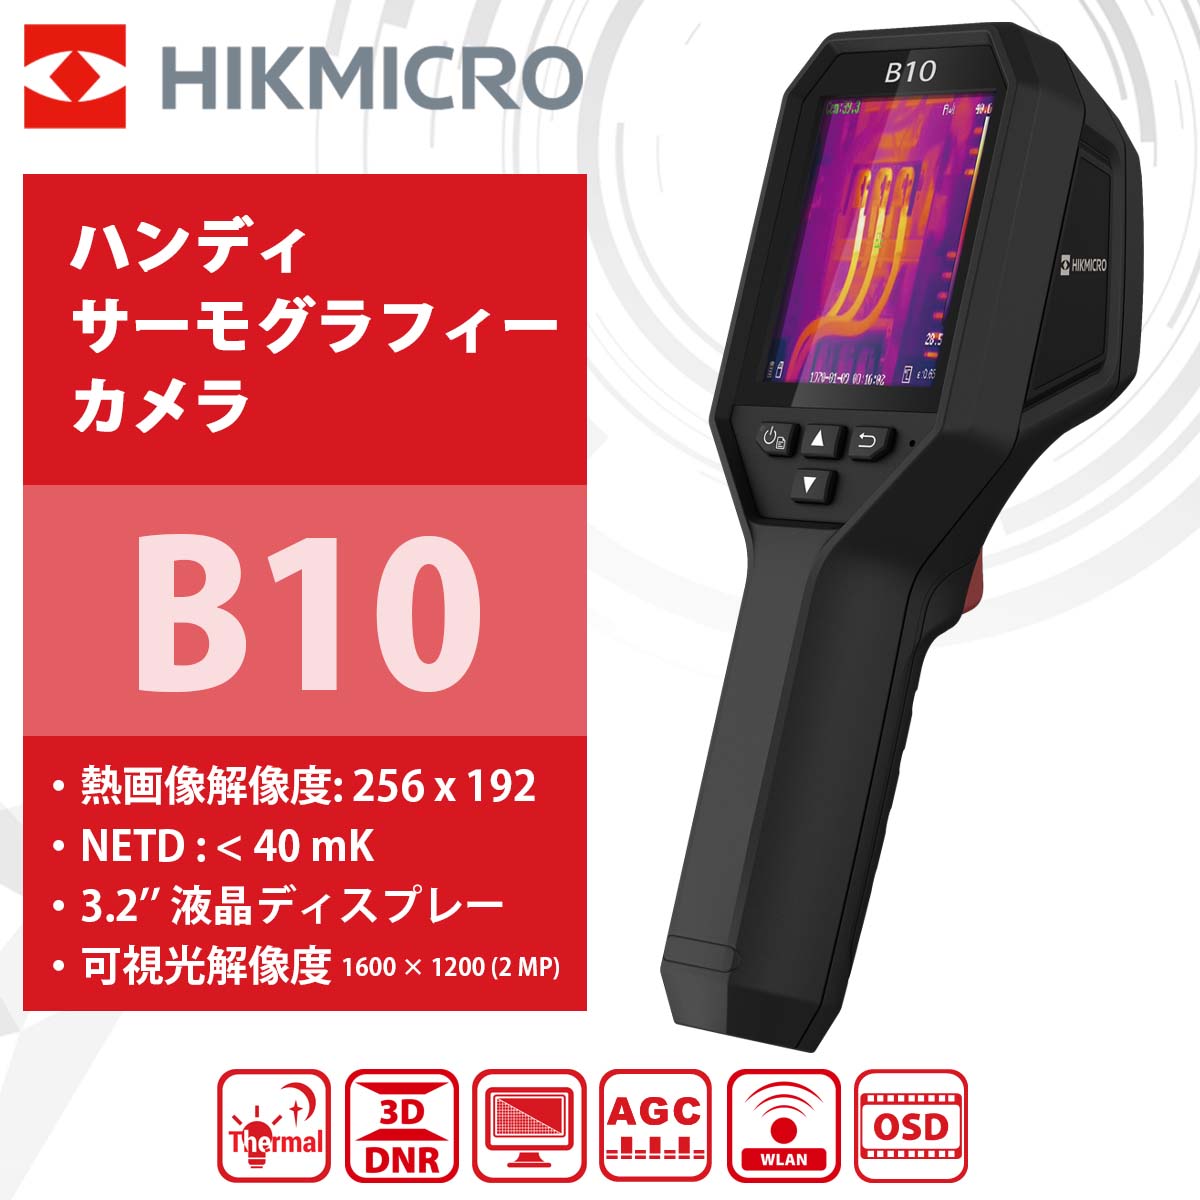 HIKMICRO B10 ハンディ サーモグラフィーカメラ 温度測定 熱画像解像度